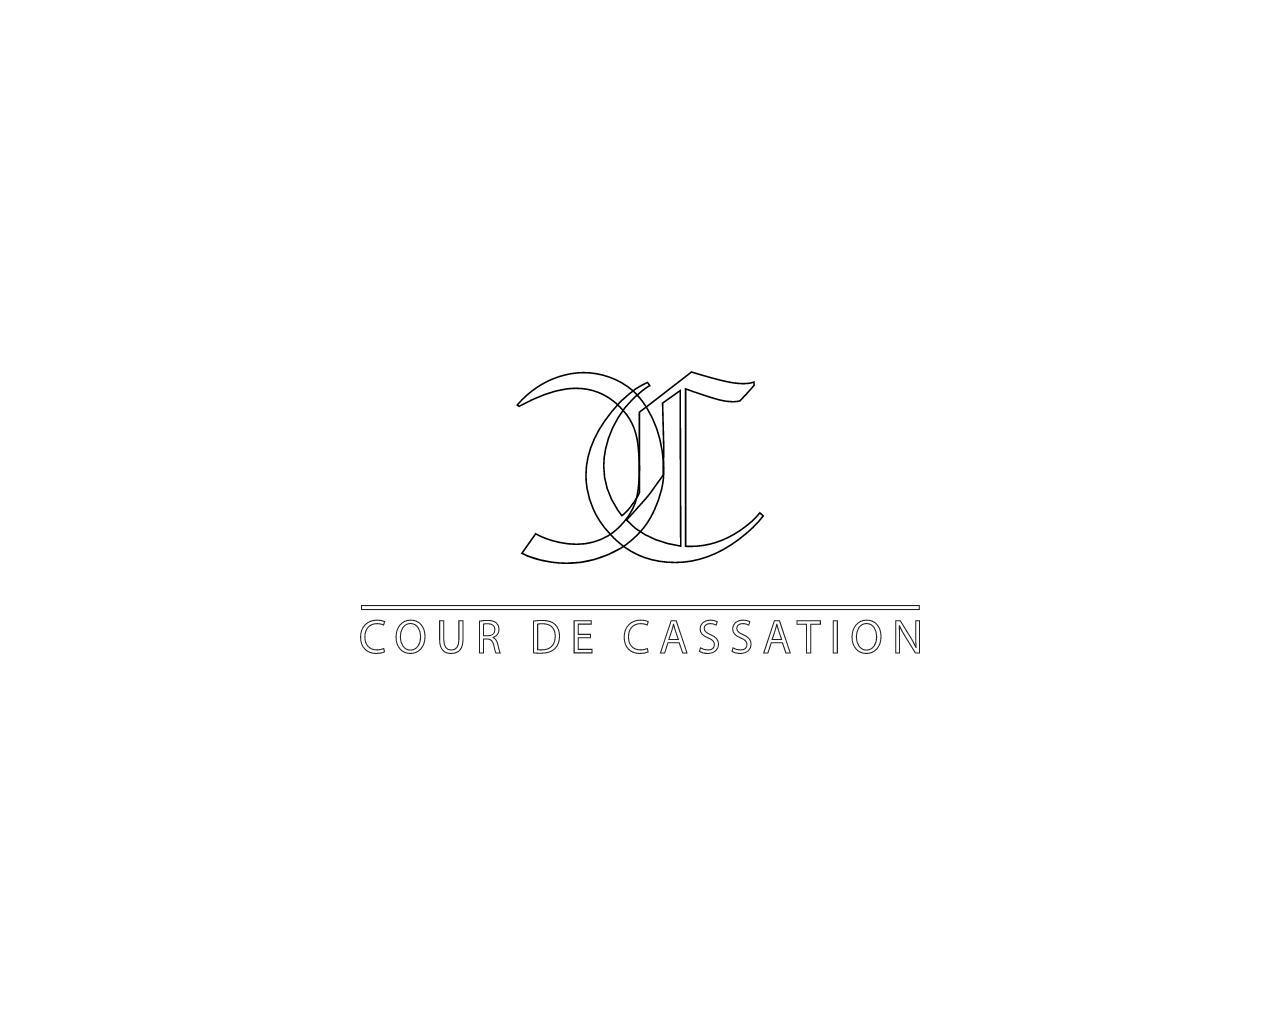 www.courdecassation.fr